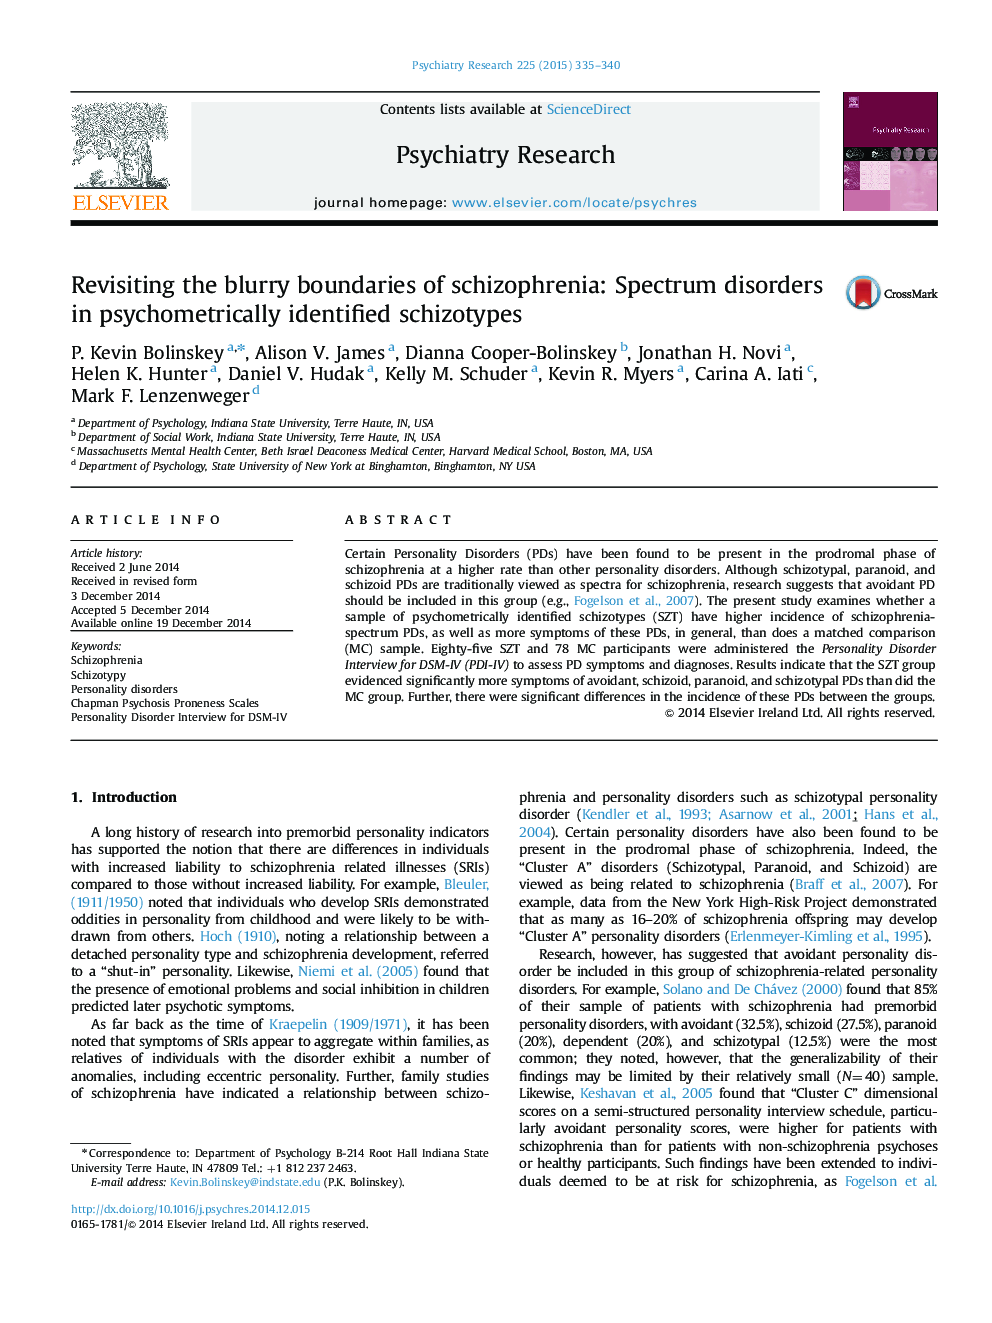 بازبینی مرزهای تار اسکیزوفرنی: اختلالات طیفی در اسکیزوتایپ های شناسایی شده روان سنجی 